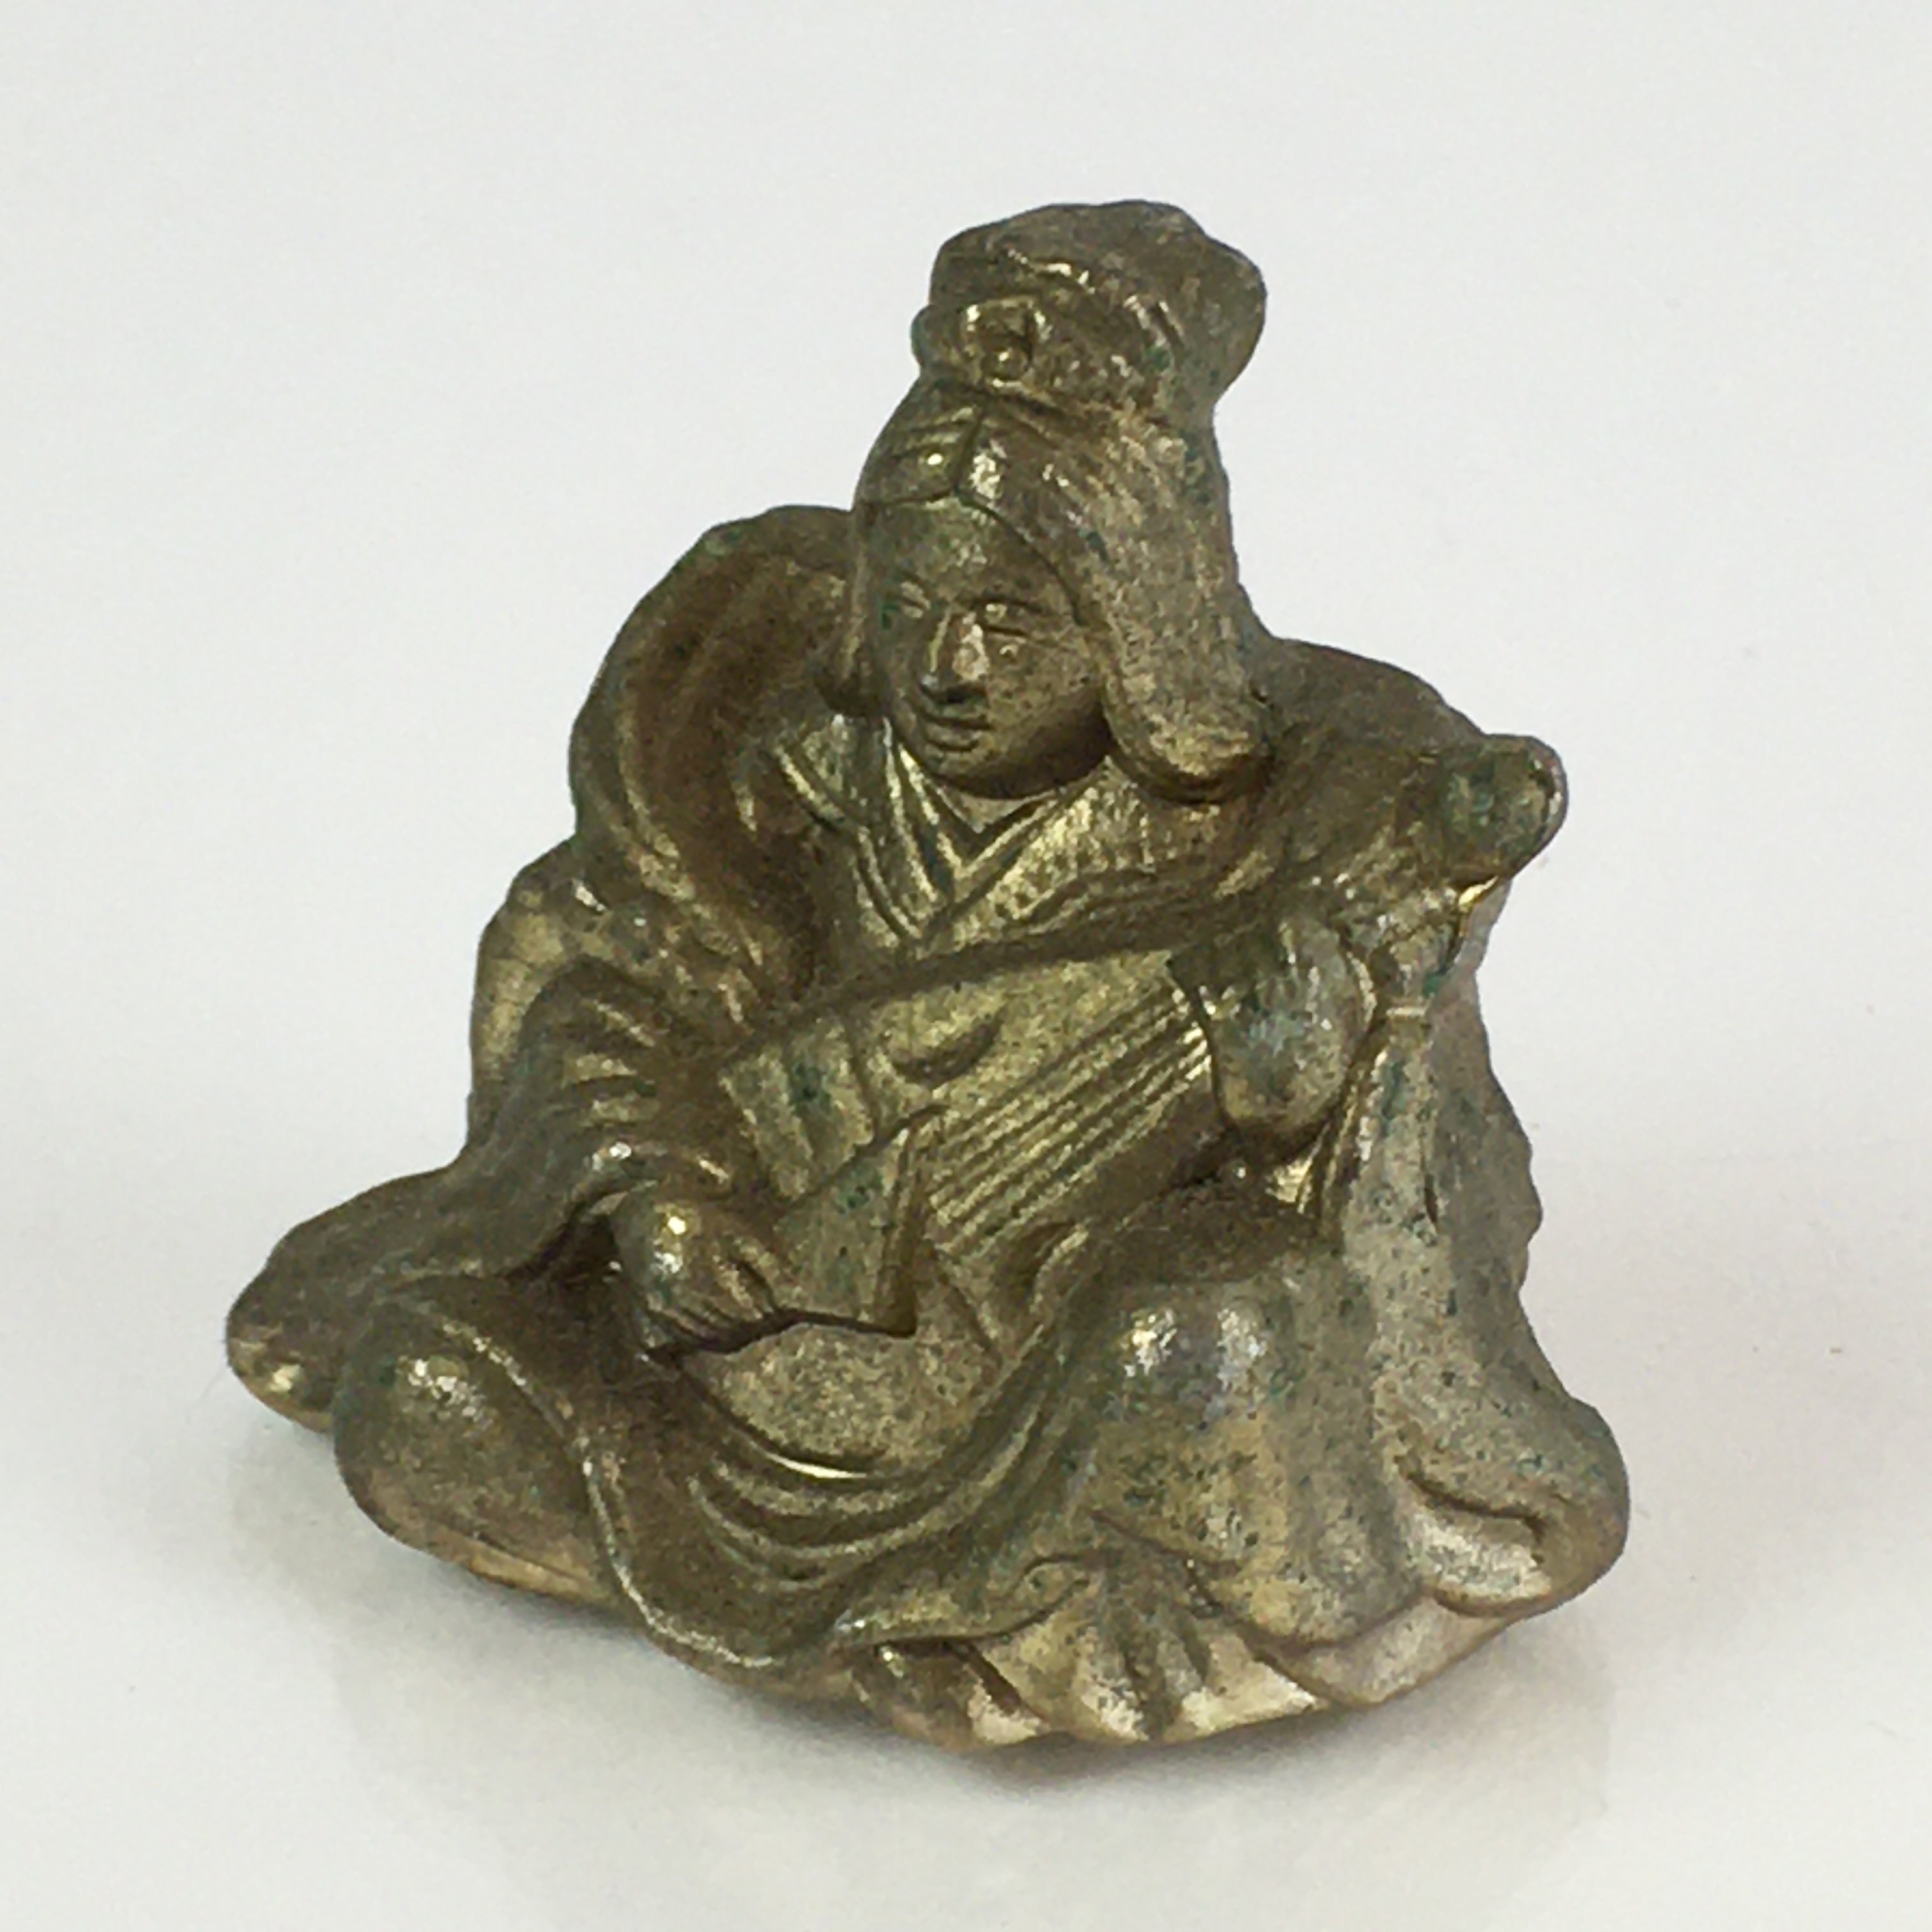 Japanese Figurine Vtg 7 Lucky Gods Benzaiten Metal Statue Paperweight JK385